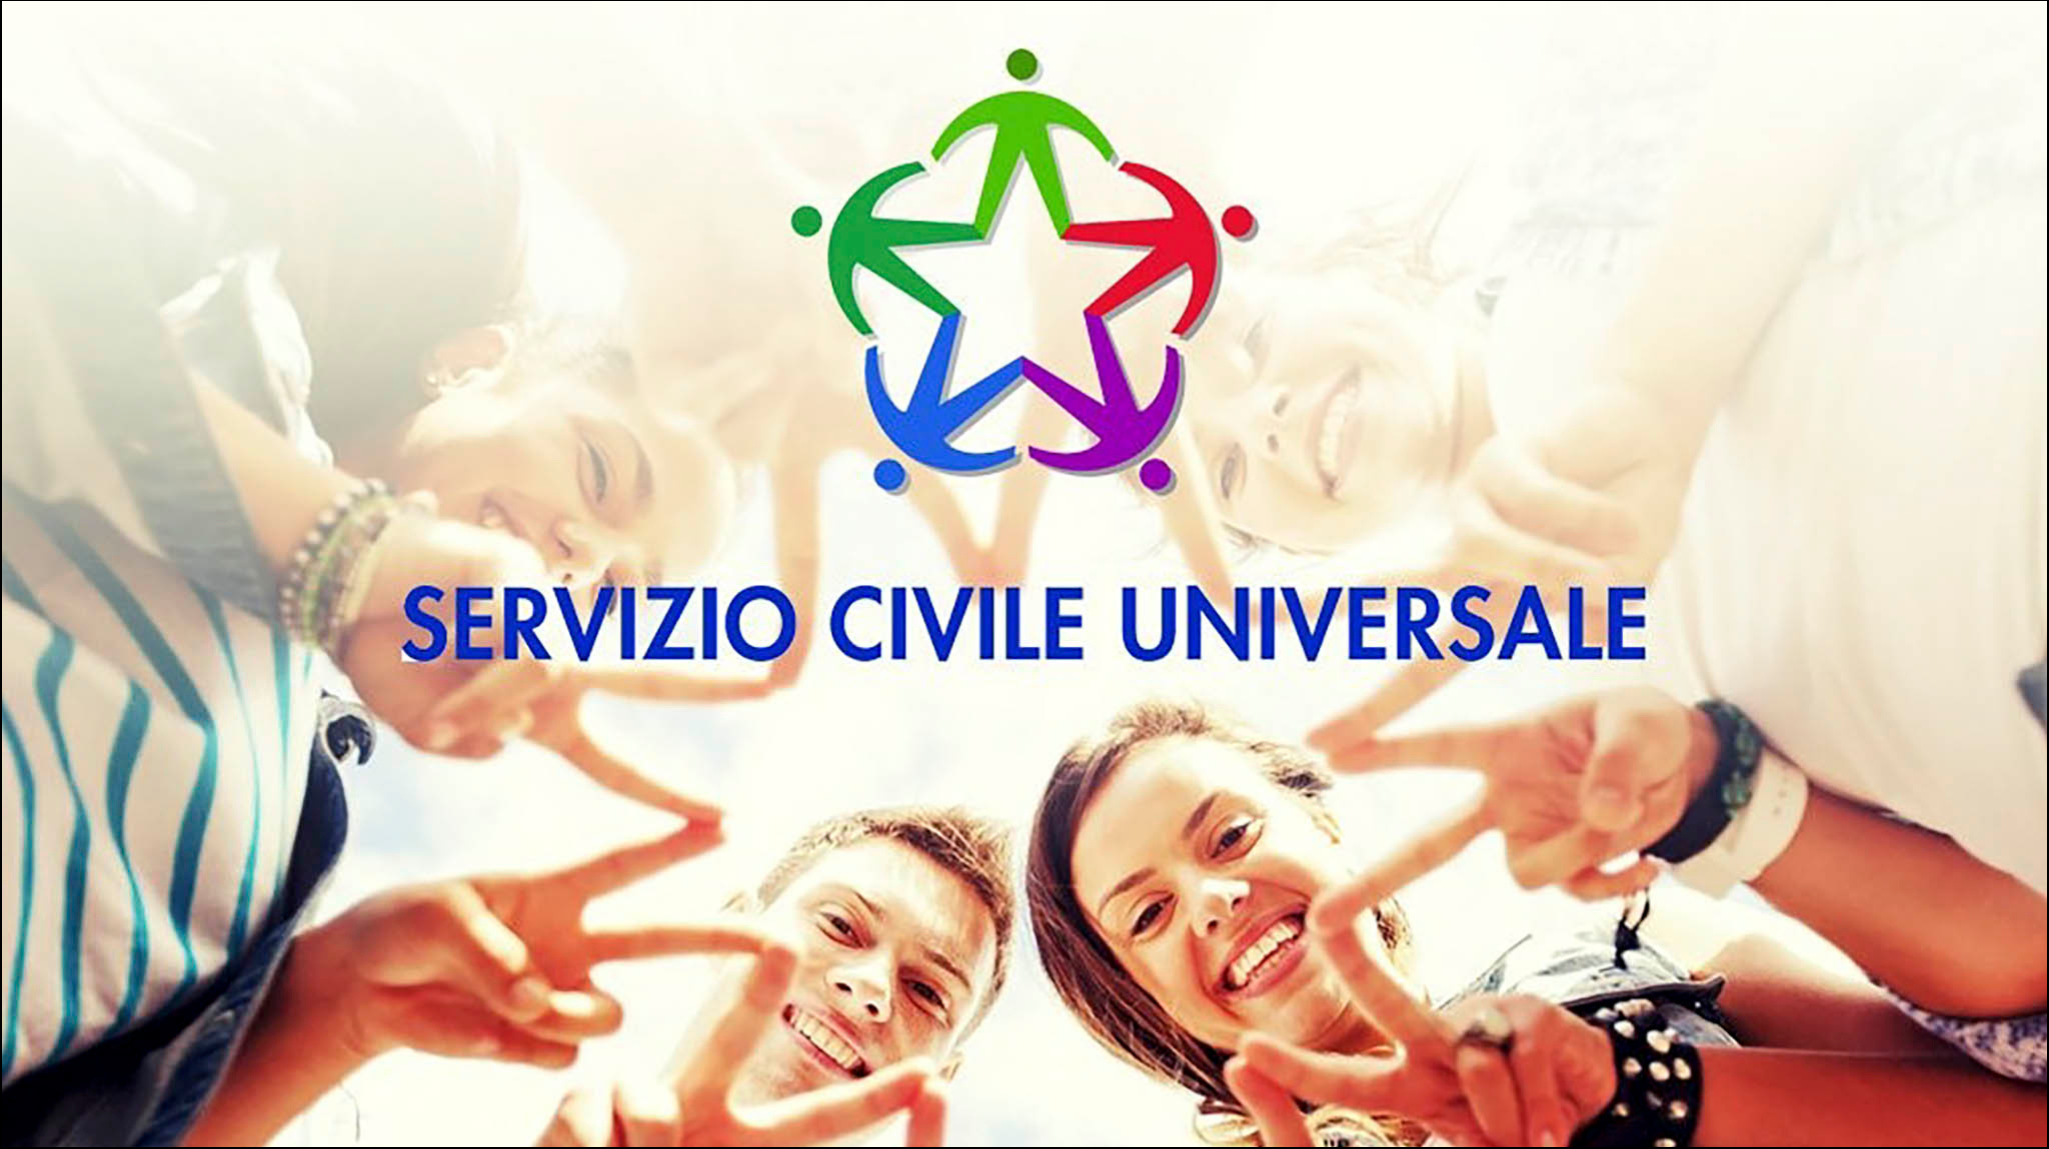 Servizio Civile Universale - Immagine in primo piano